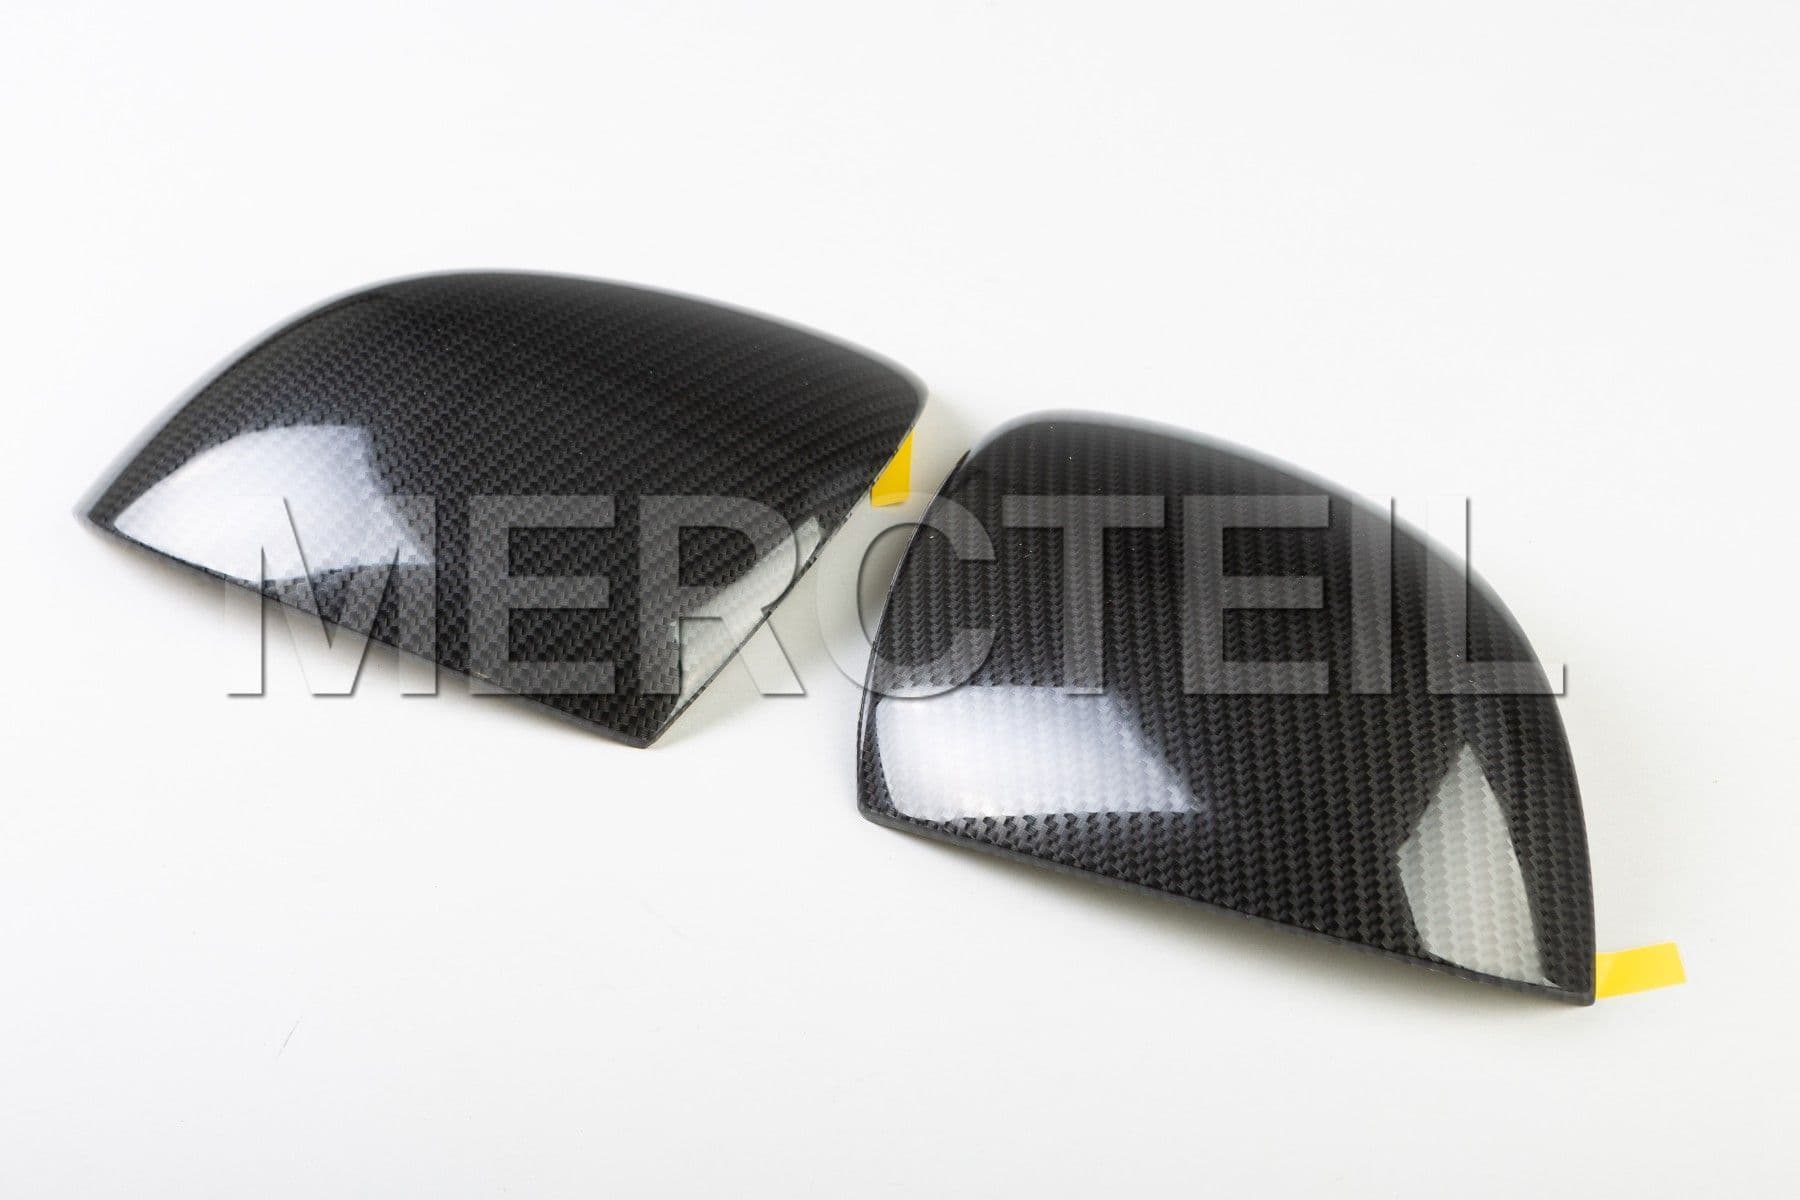 A Klasse Carbon Style Außenspiegel Decken Original Mercedes Benz (Teilenummer: A1778112300)